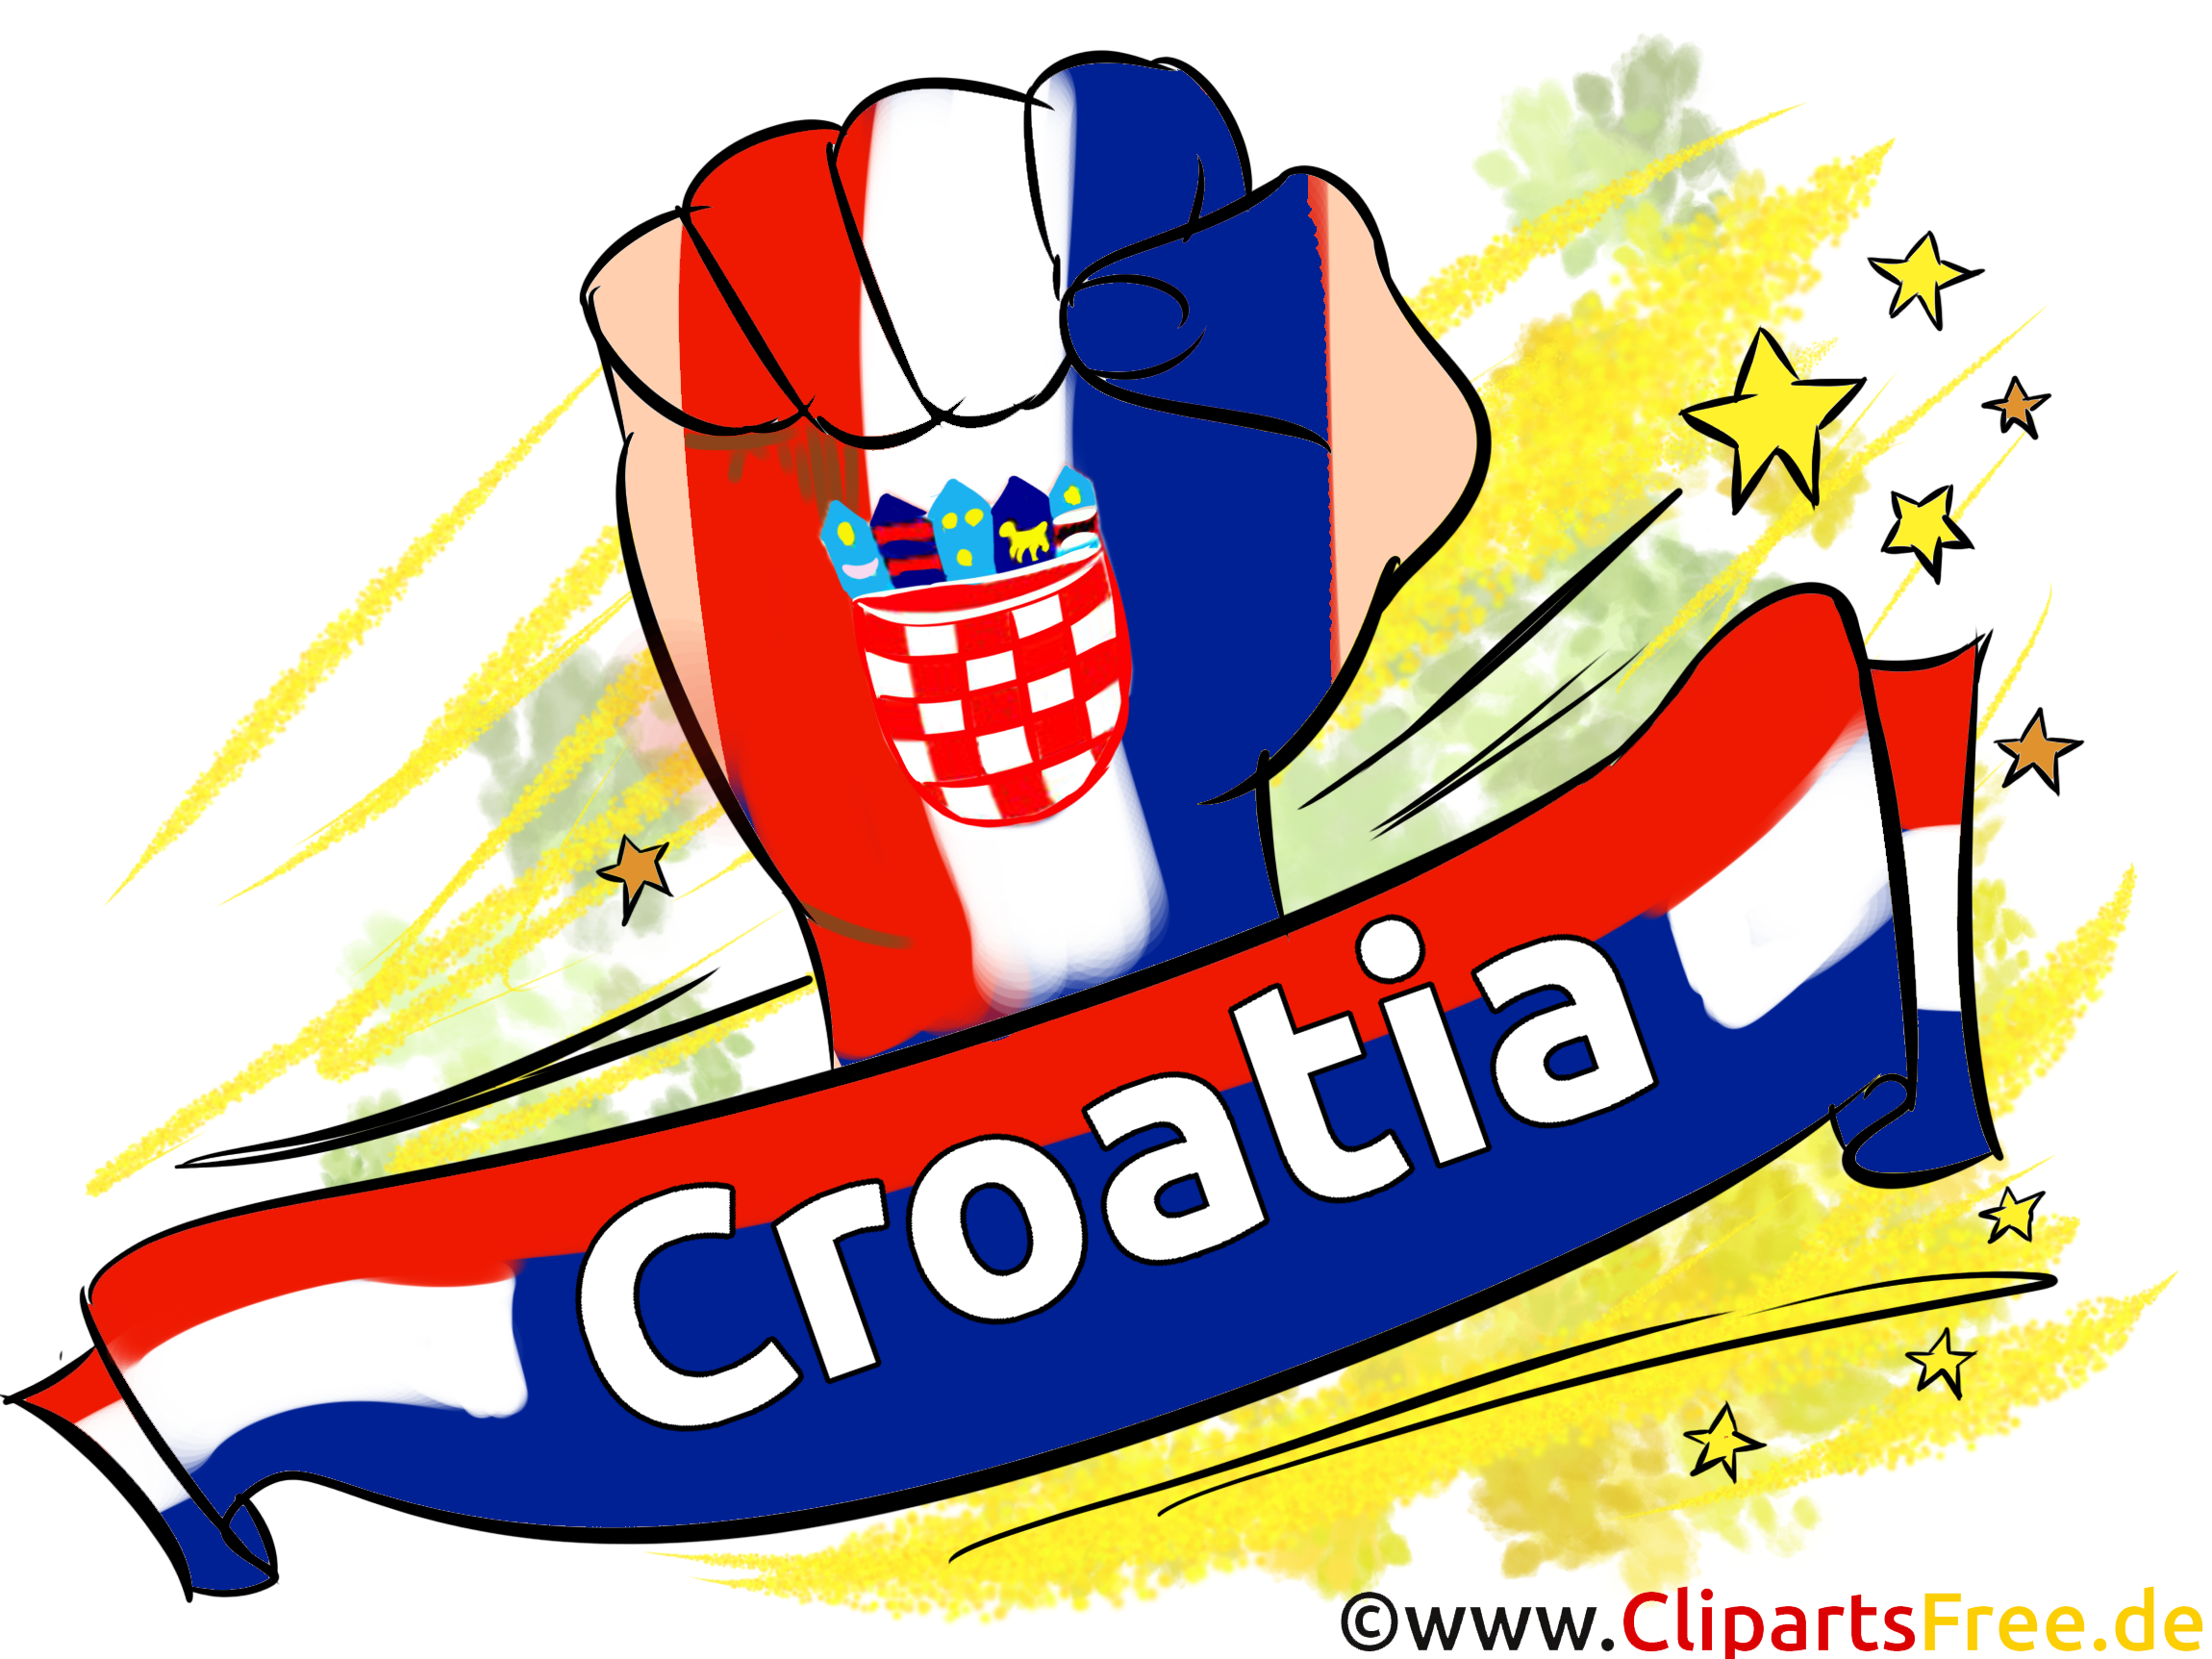 Télécharger Soccer Croatie Images gratuitement